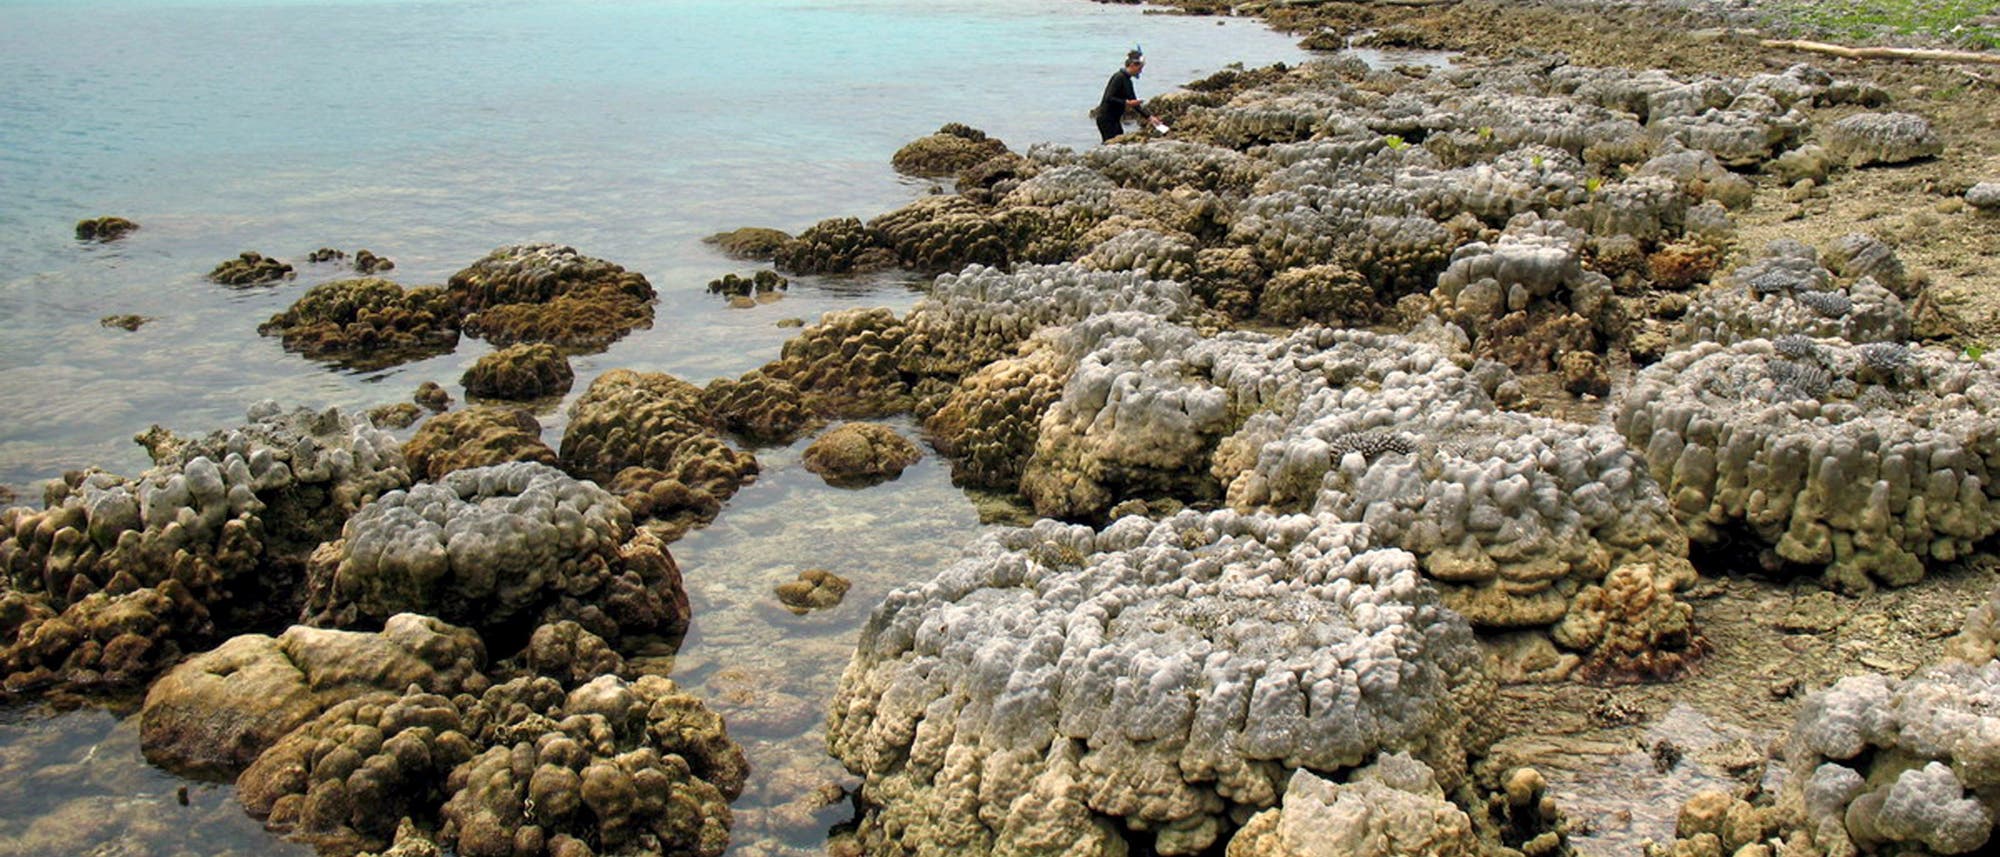 Angehobene Korallen an einem Strand der Insel Simeulue im Südwesten von Aceh, Indonesien. (Archivbild)